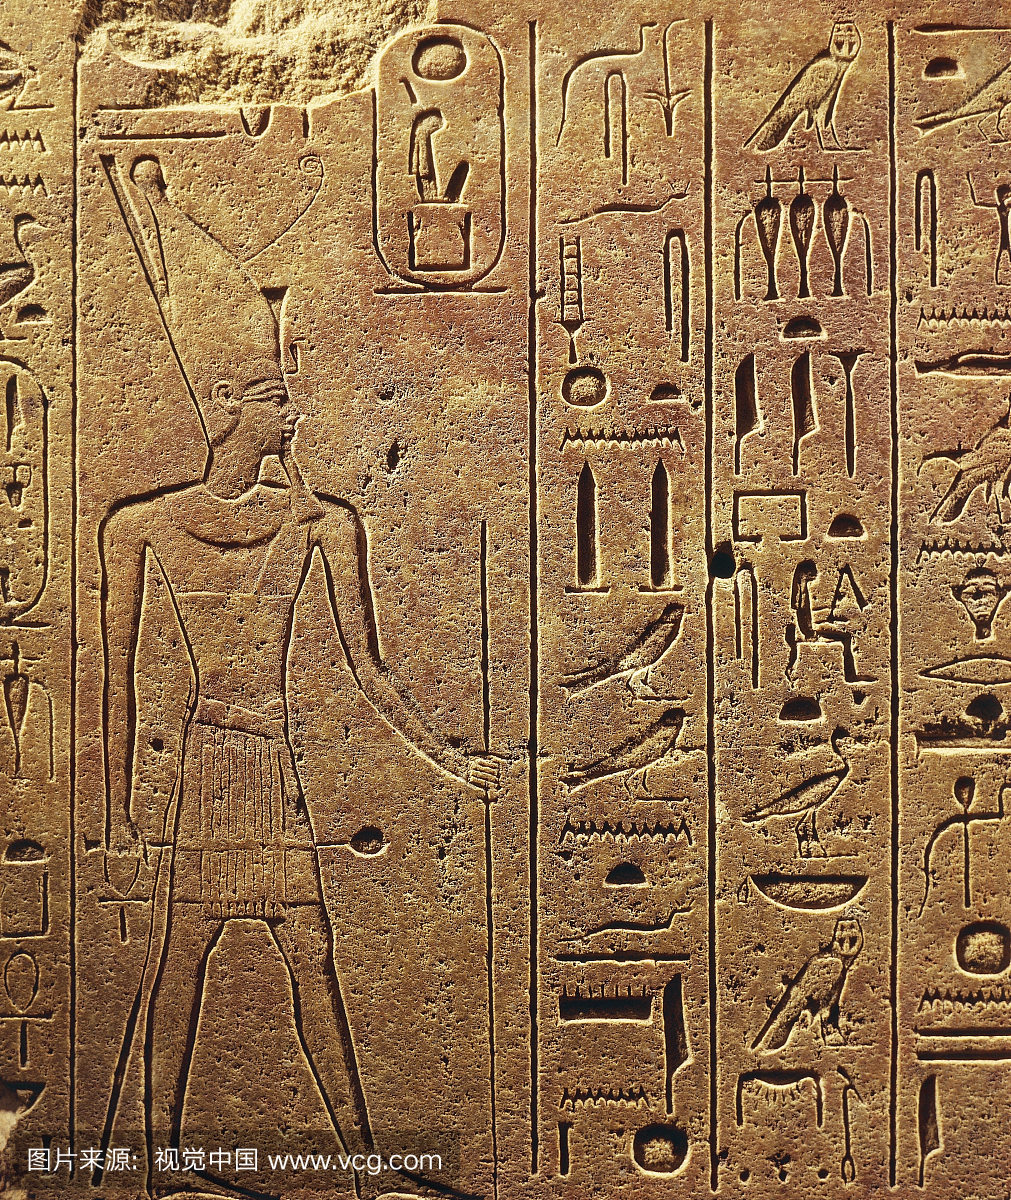 象形文字,埃及文明,新王国,王朝十八世纪卡尔纳